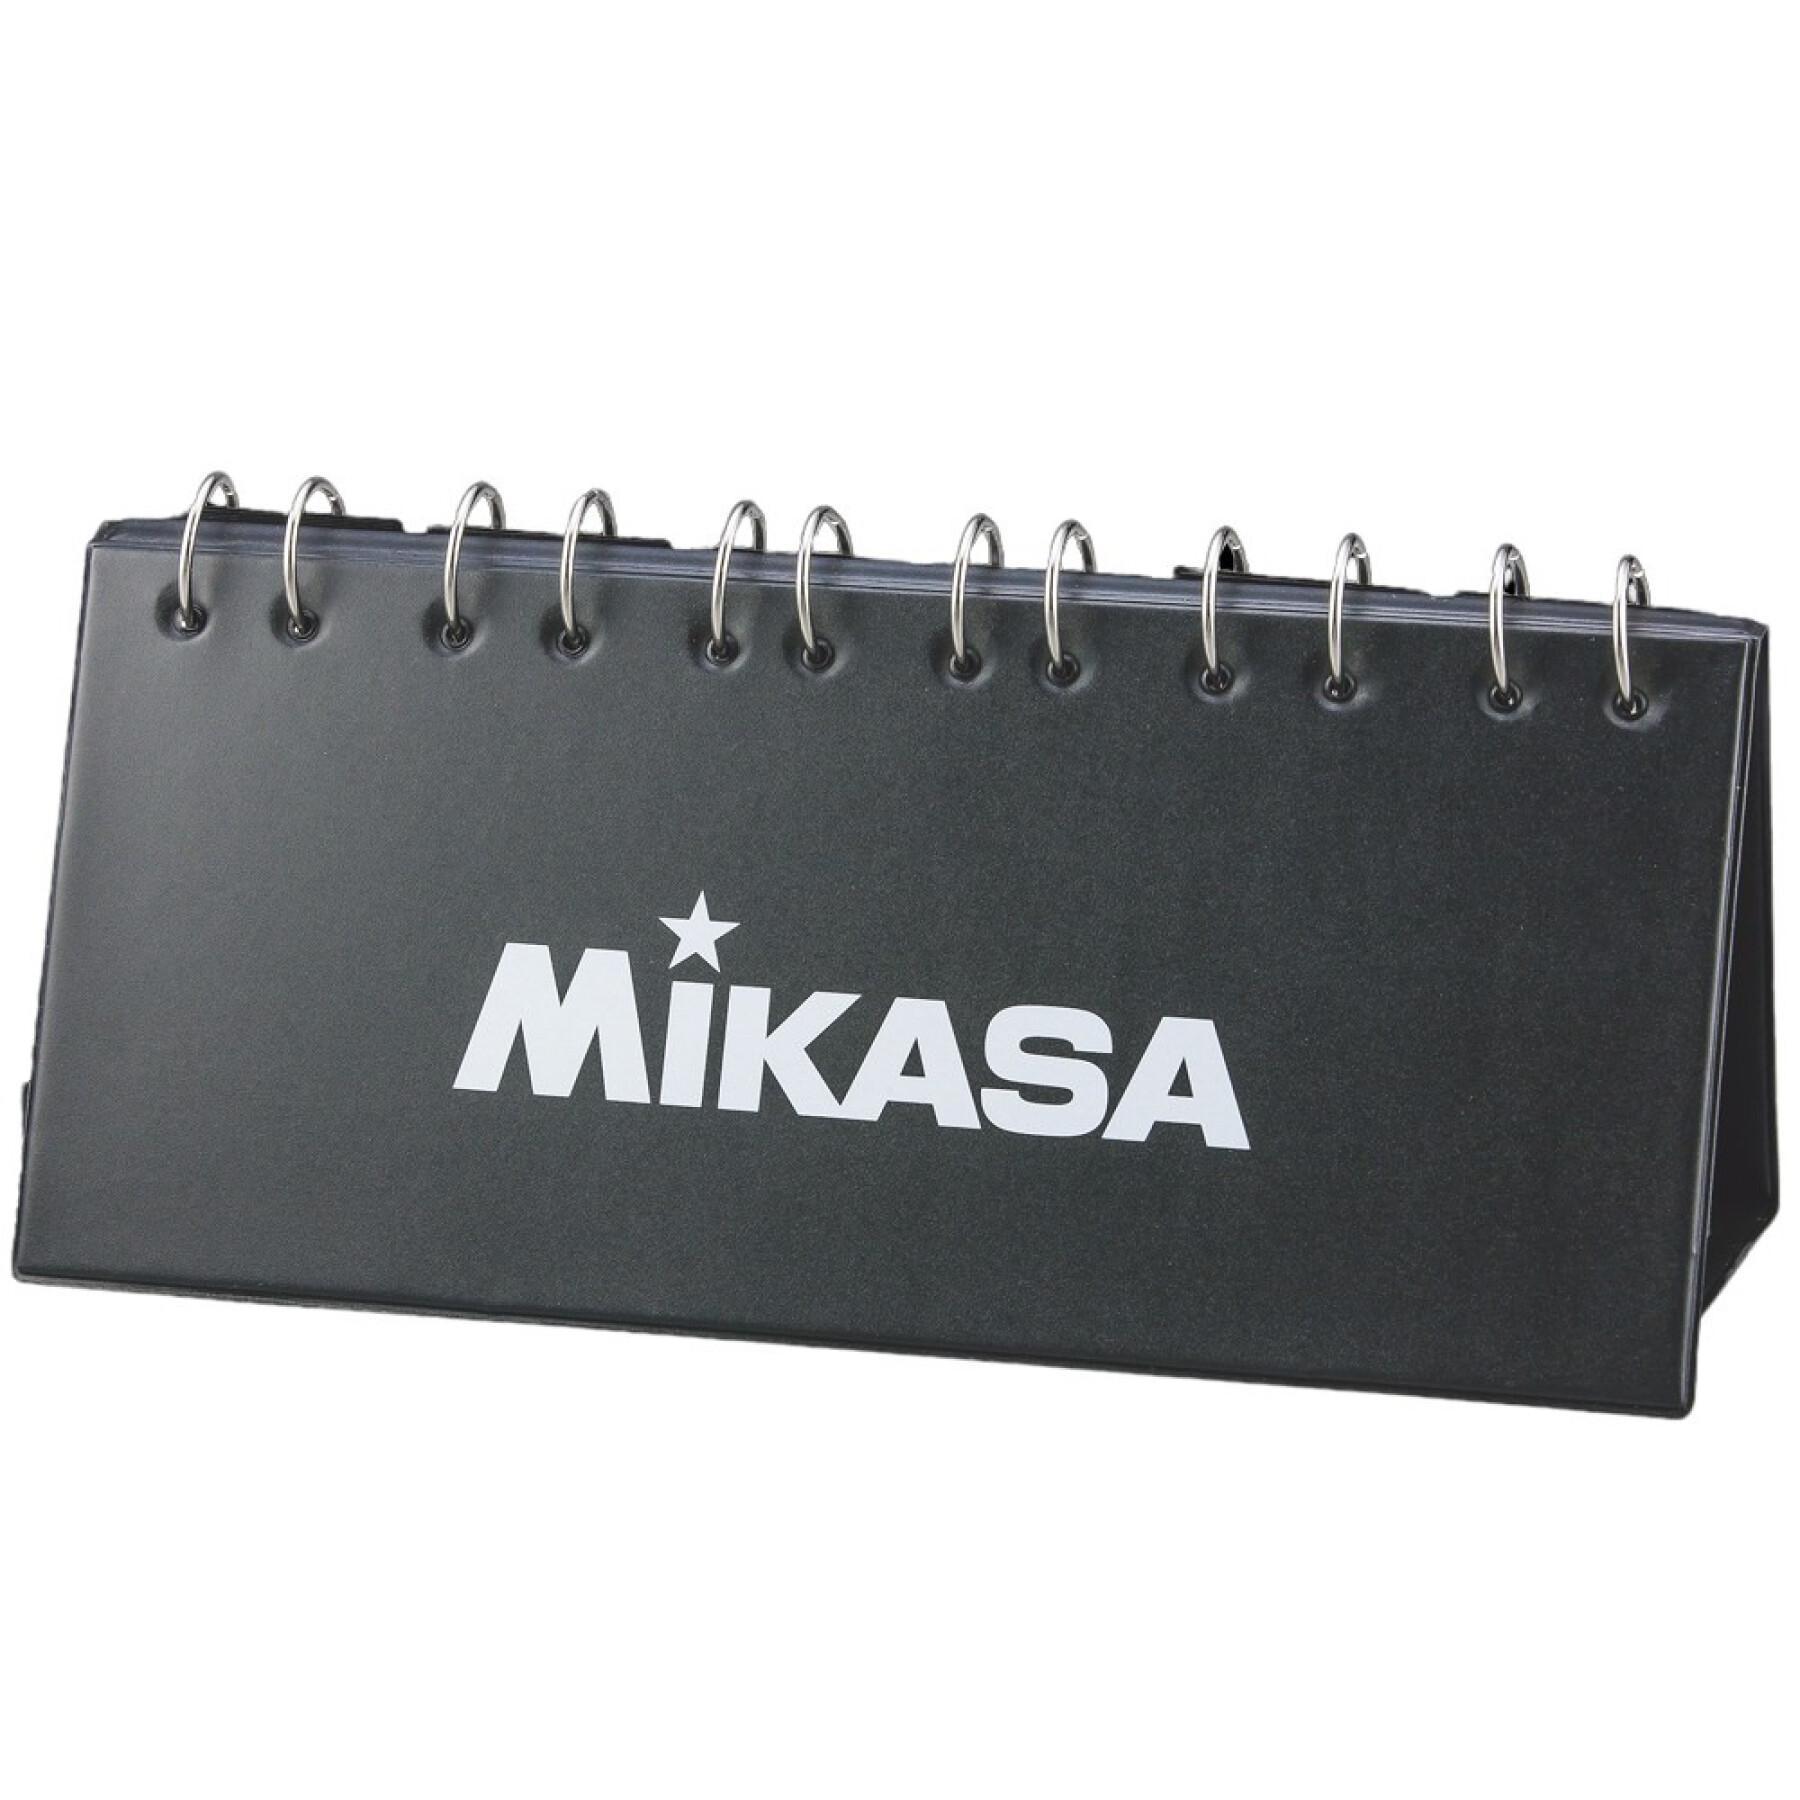 Resultattavla Mikasa (99 points)